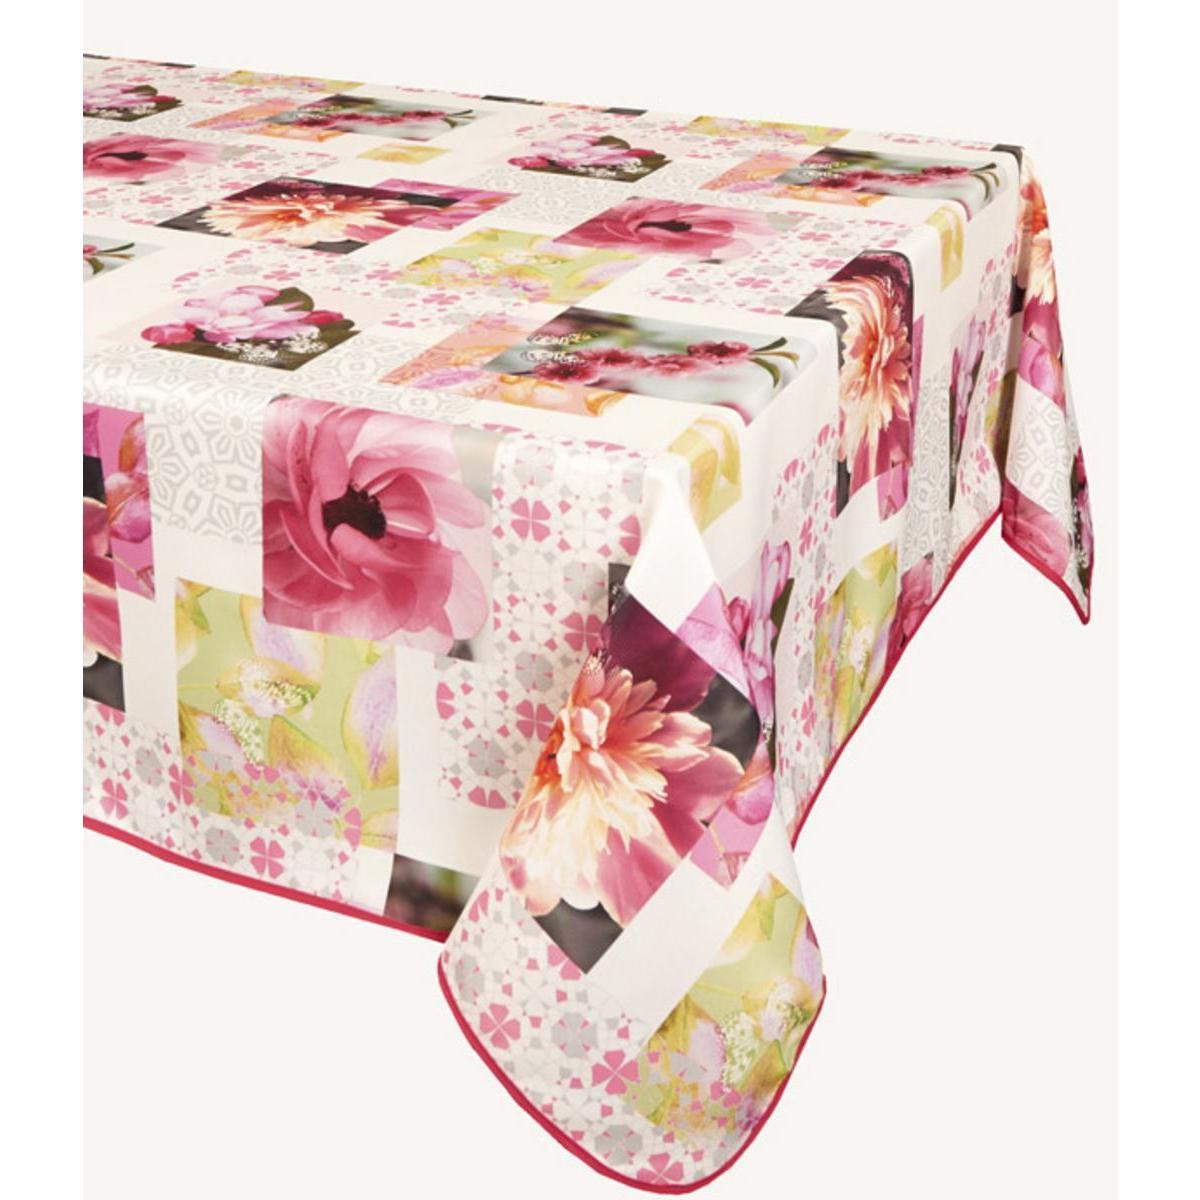 Toile cirée carrée - 100 % Polyester - 180 x 180 cm - Rose et blanc